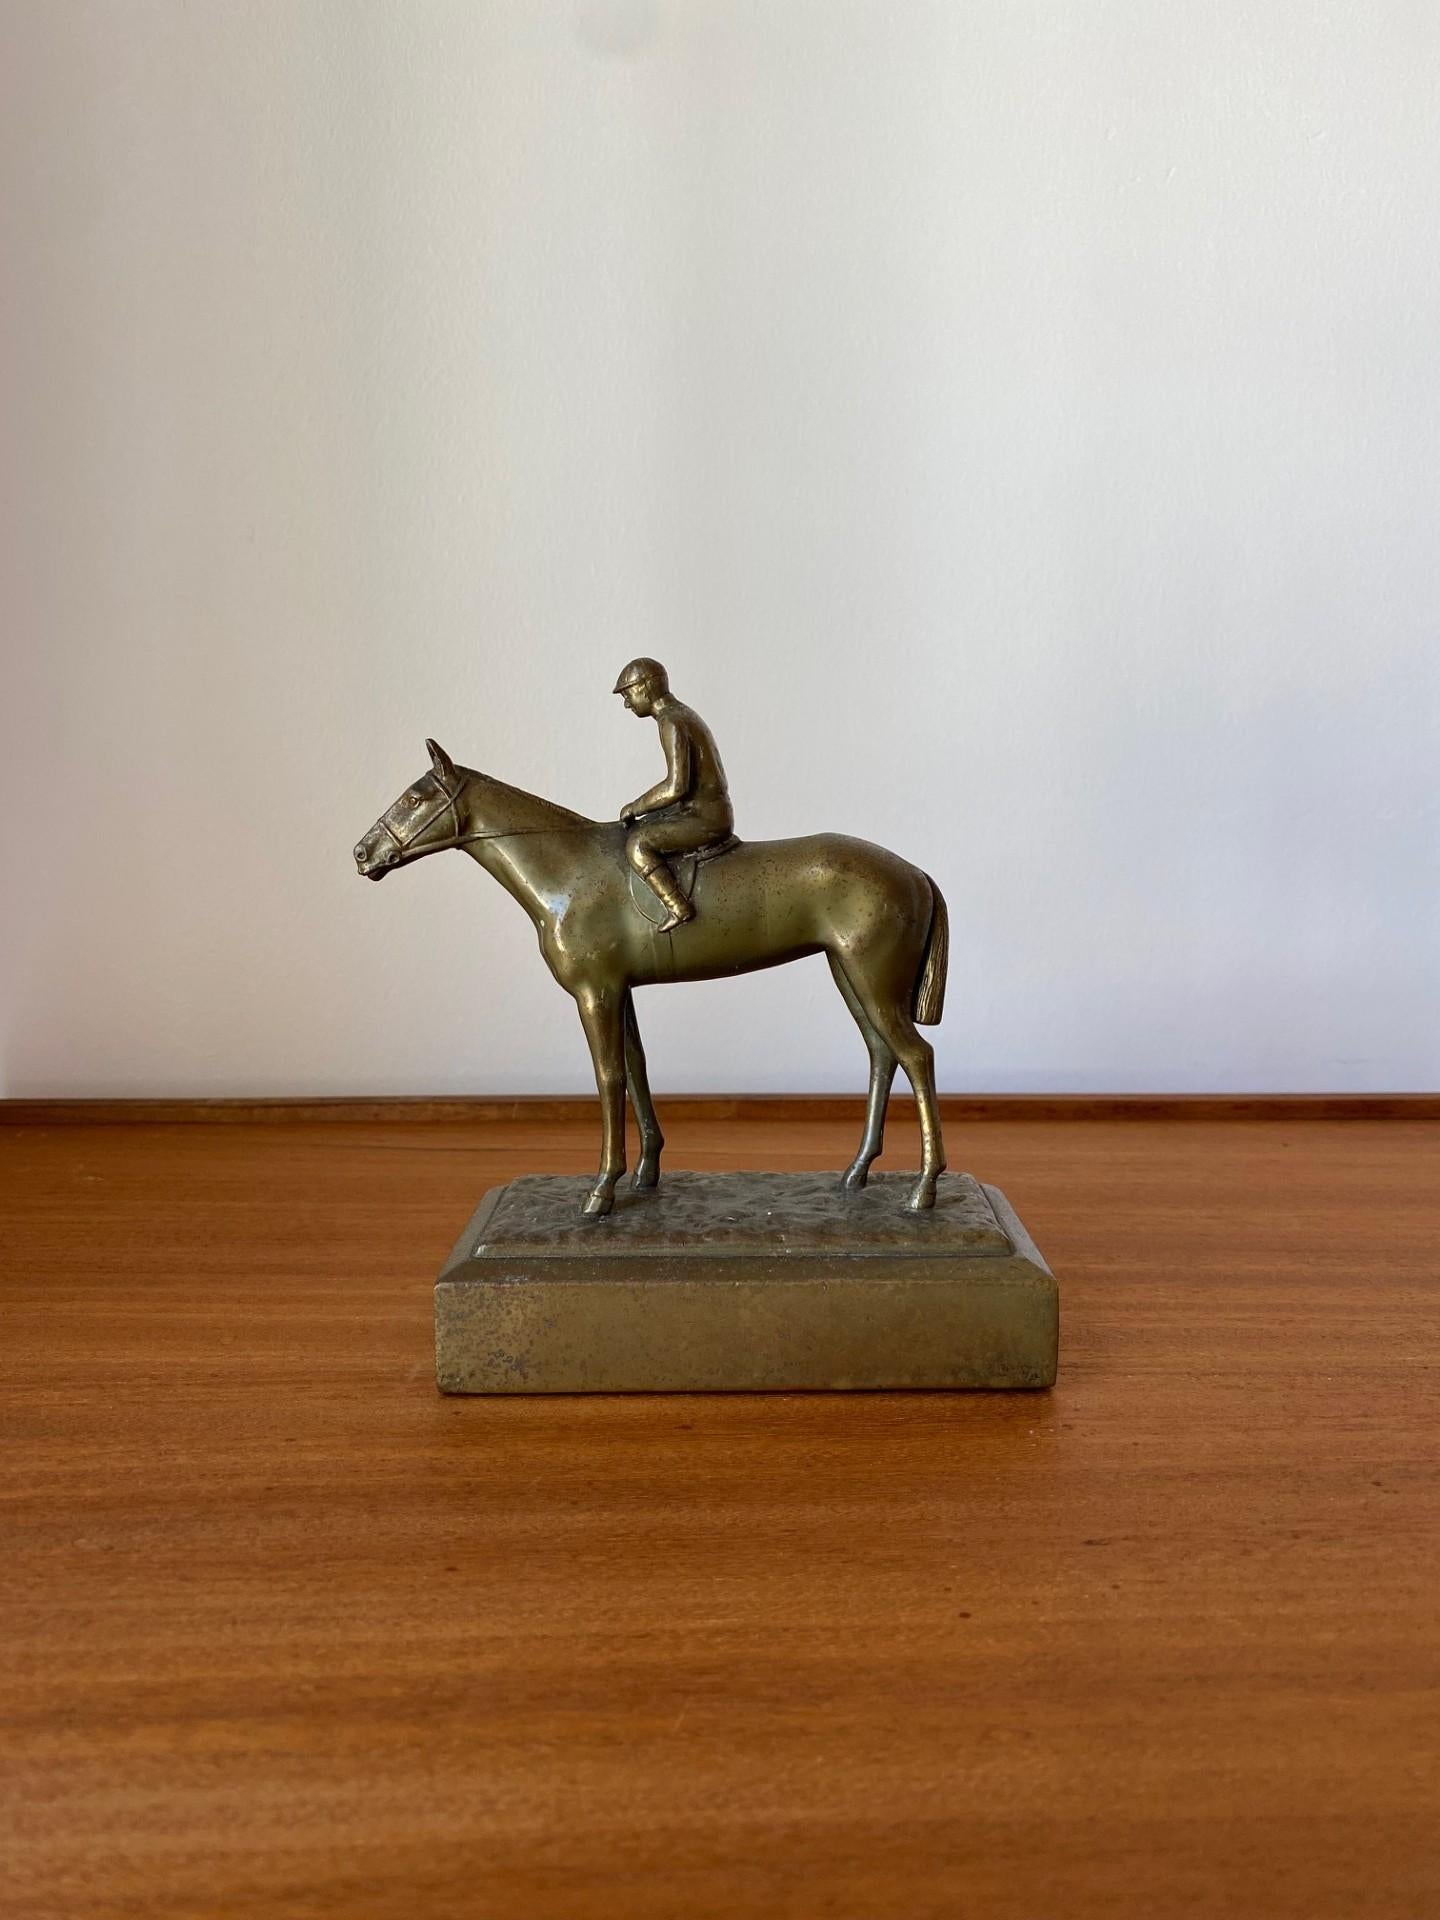 Incroyable sculpture en bronze de Jennings Bros.  Cette incroyable pièce en bronze vieilli représente un jockey et son cheval.  La manifestation du bronze avec une représentation équestre est synonyme de statut et d'éclat.  Le contrôle figuré et